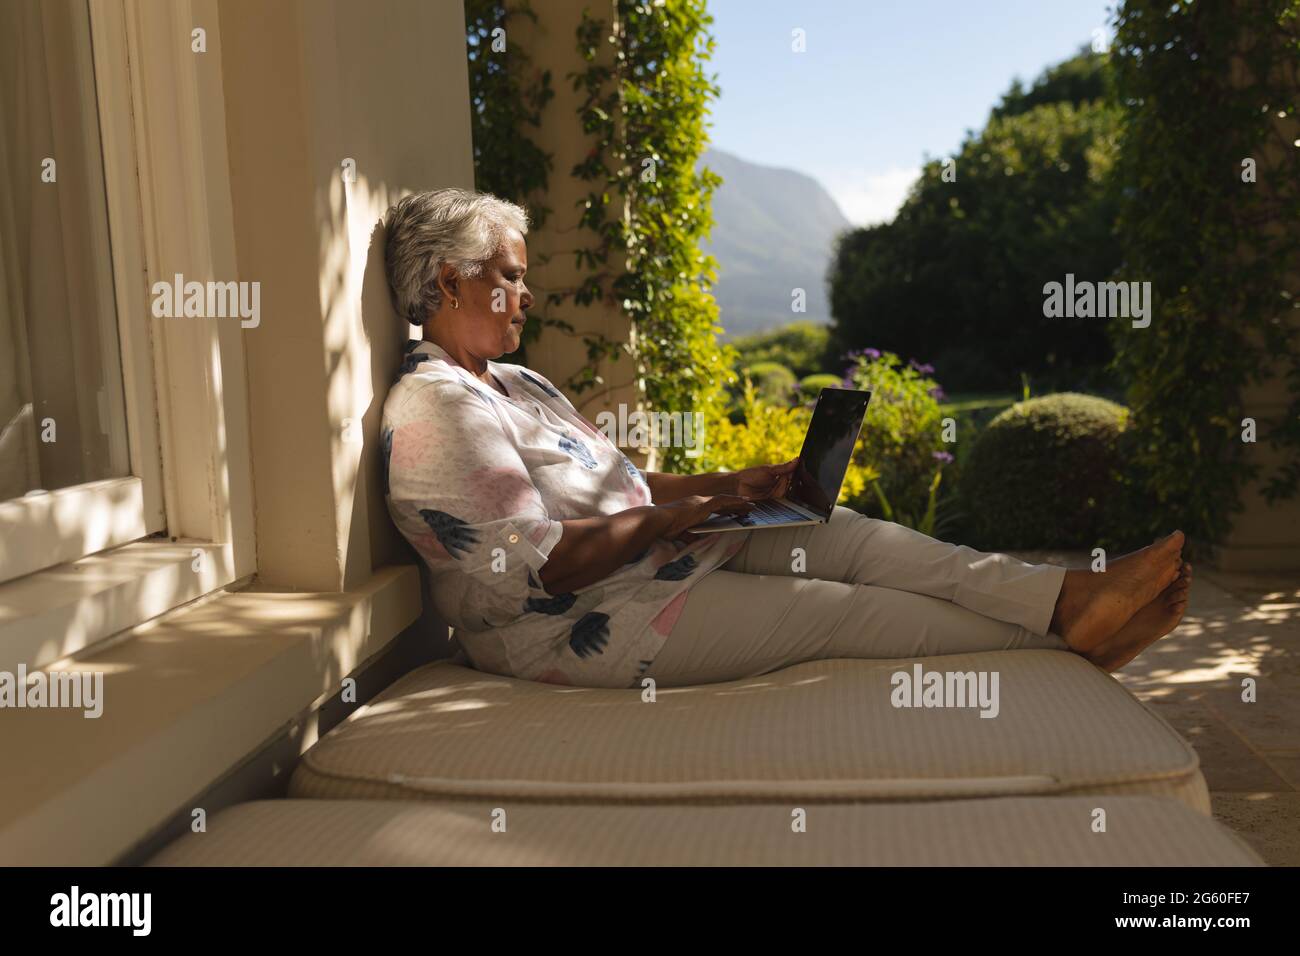 Femme afro-américaine senior utilisant un ordinateur portable sur une terrasse ombragée dans un jardin ensoleillé Banque D'Images